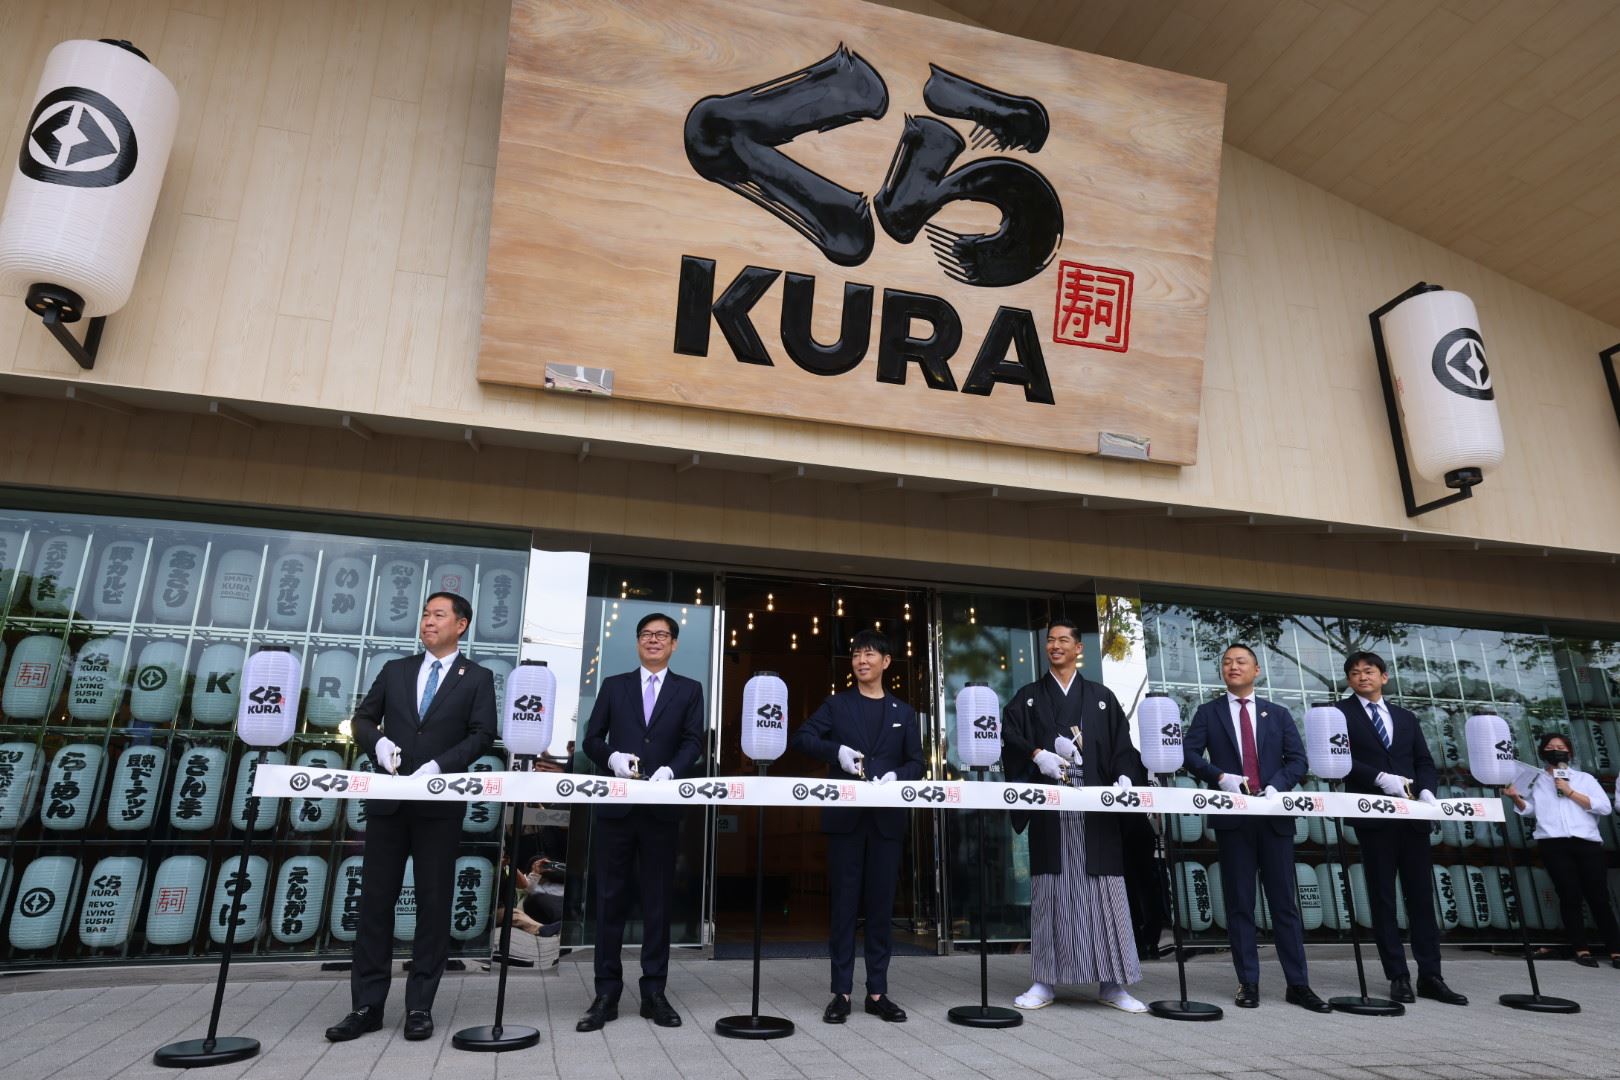 和食文化打造新地標  藏壽司首家全球旗艦店亞灣開幕